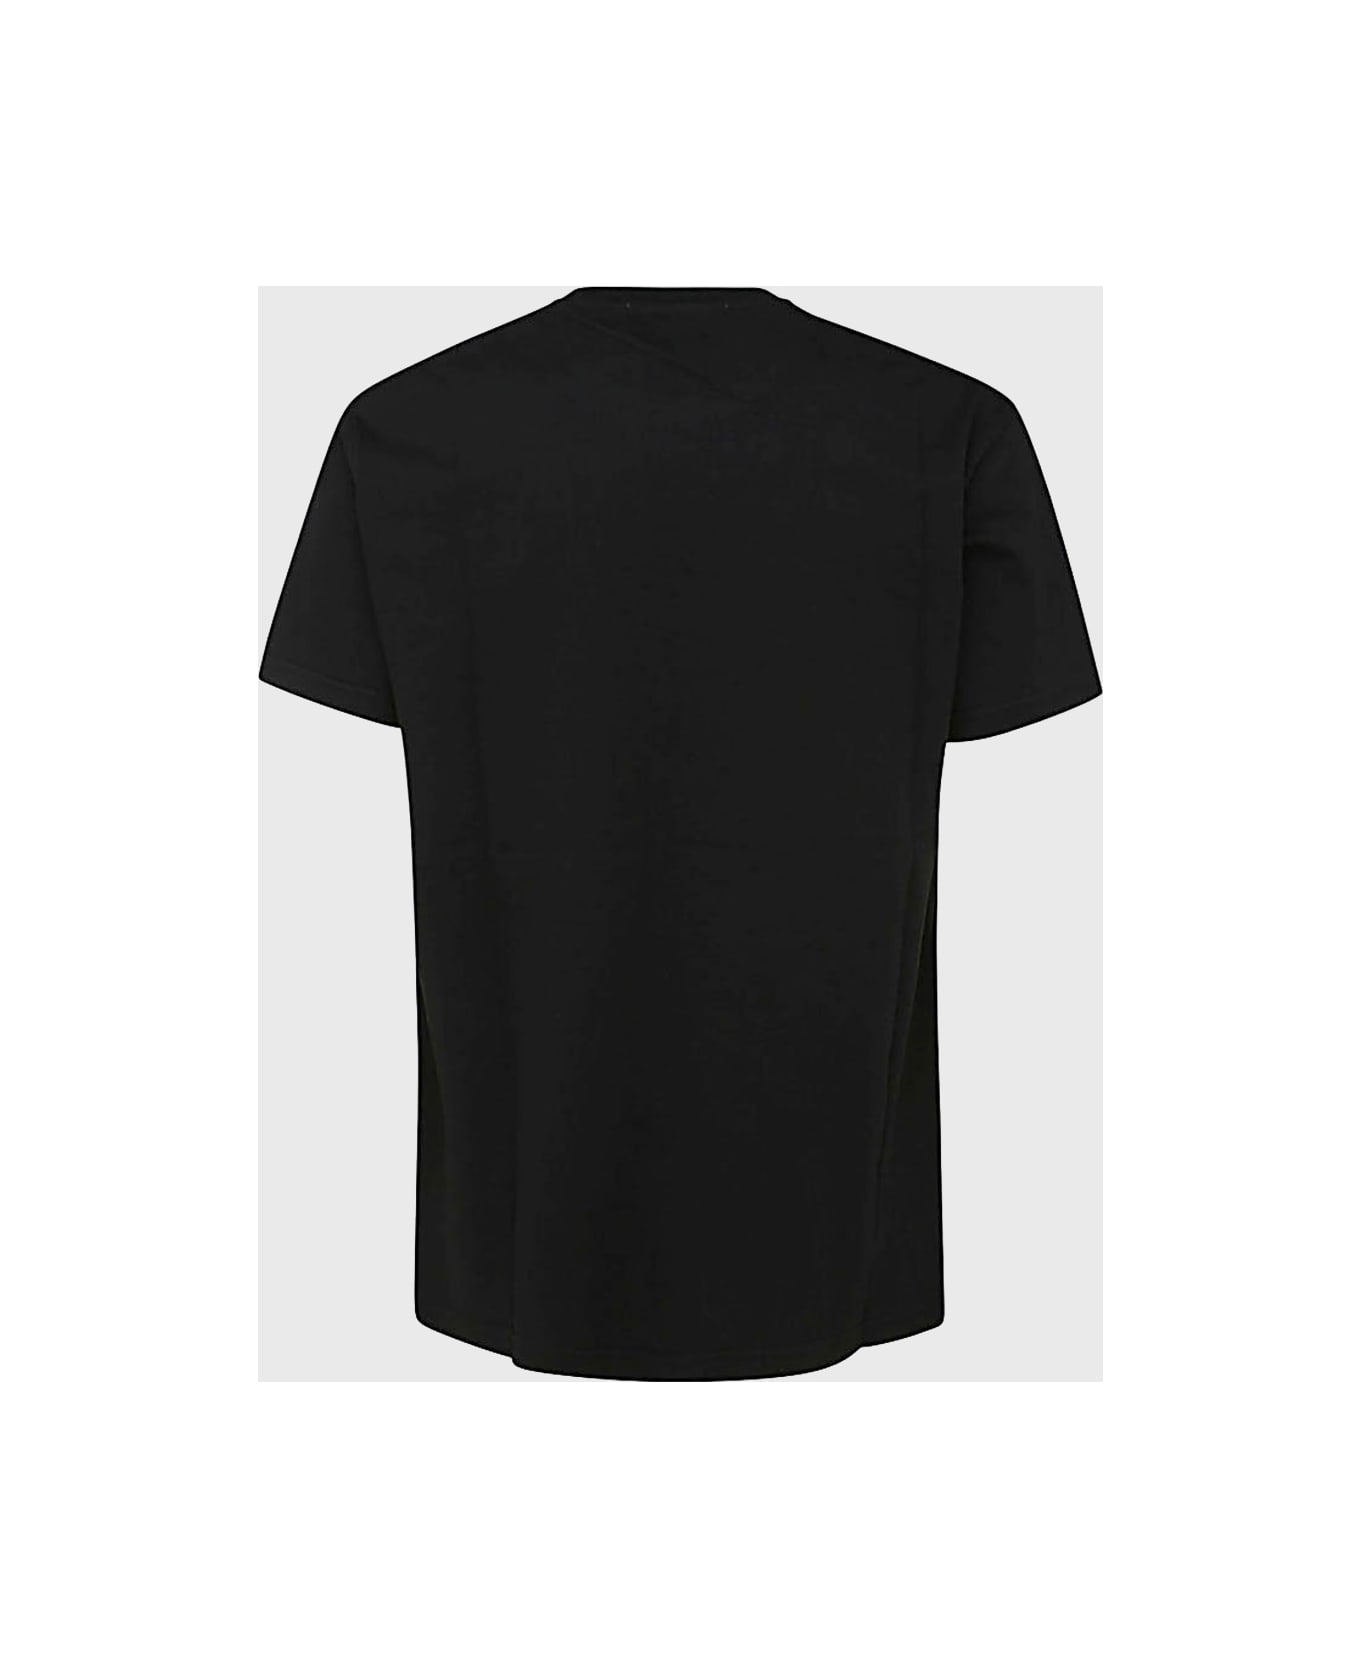 Vivienne Westwood Black Cotton T-shirt - Black シャツ